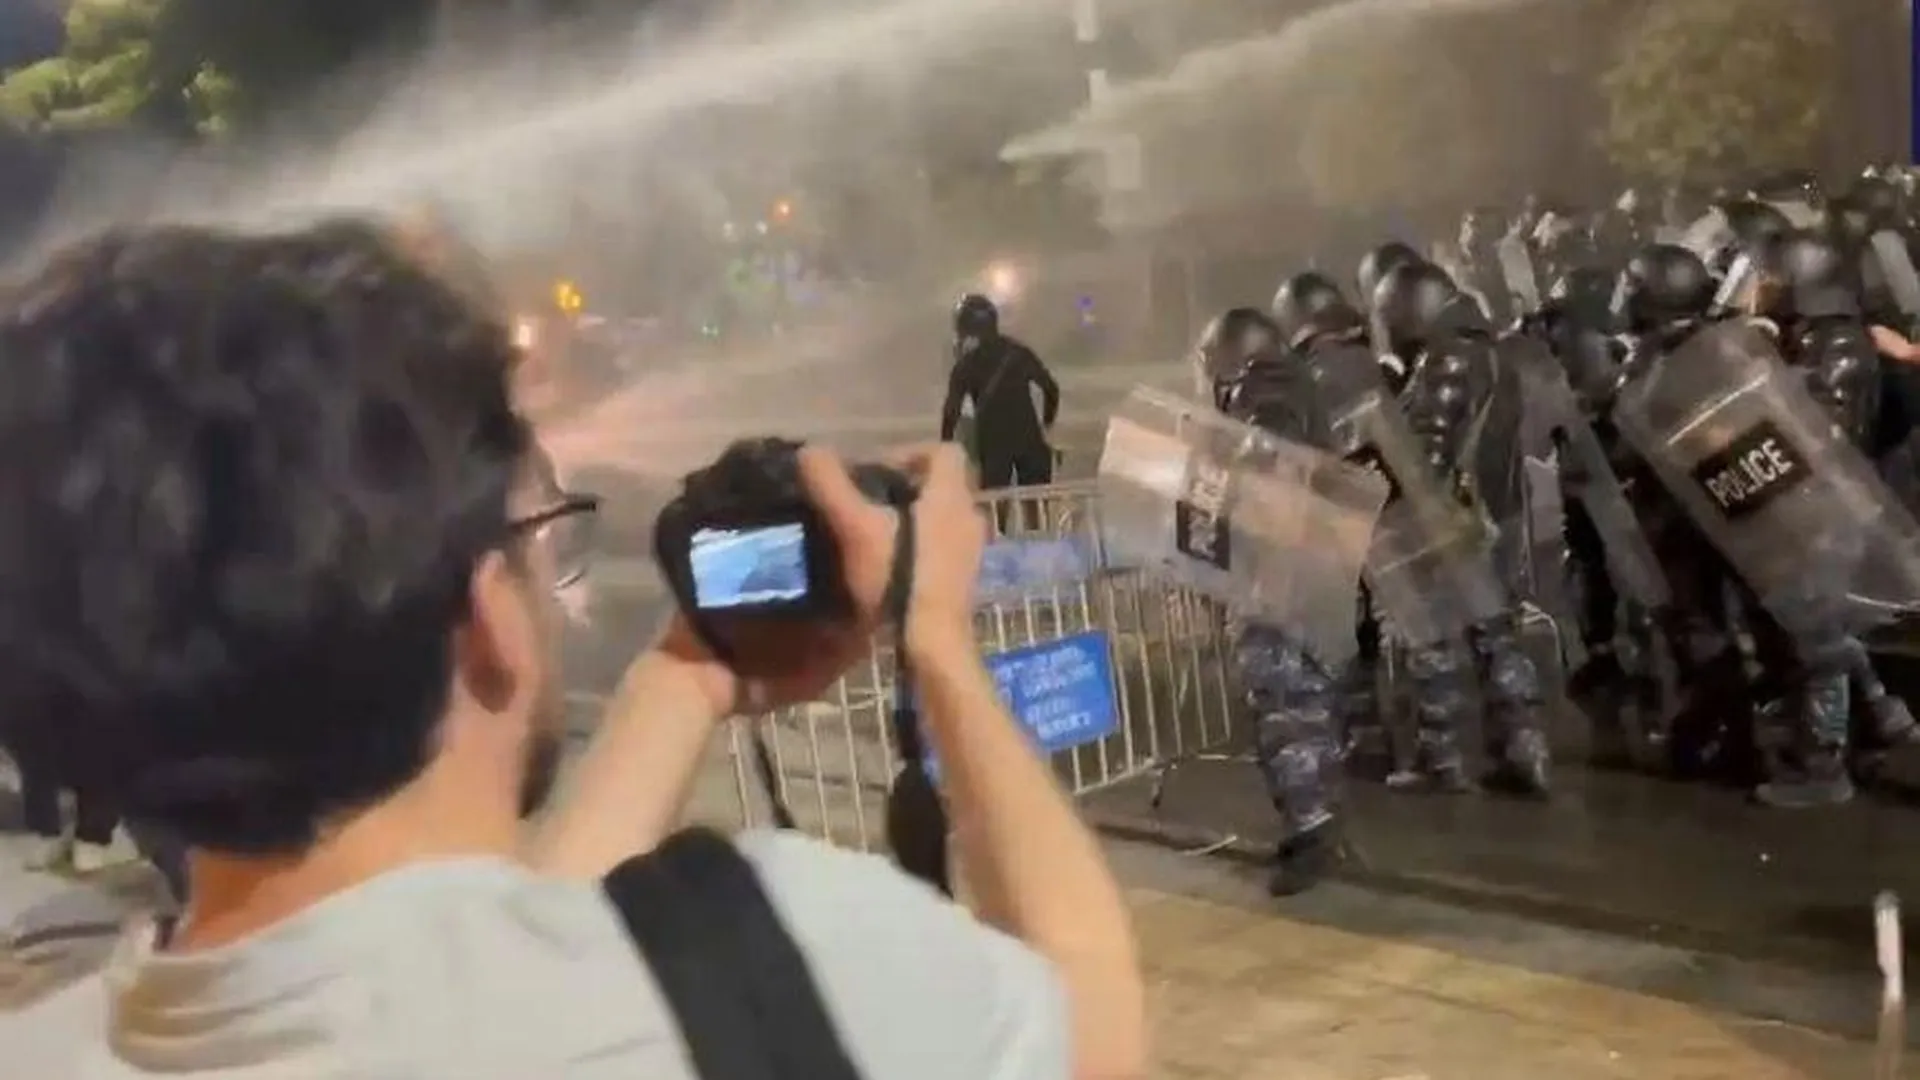 Спецназ начал применять резиновые пули для разгона акции протеста в Тбилиси у здания парламента